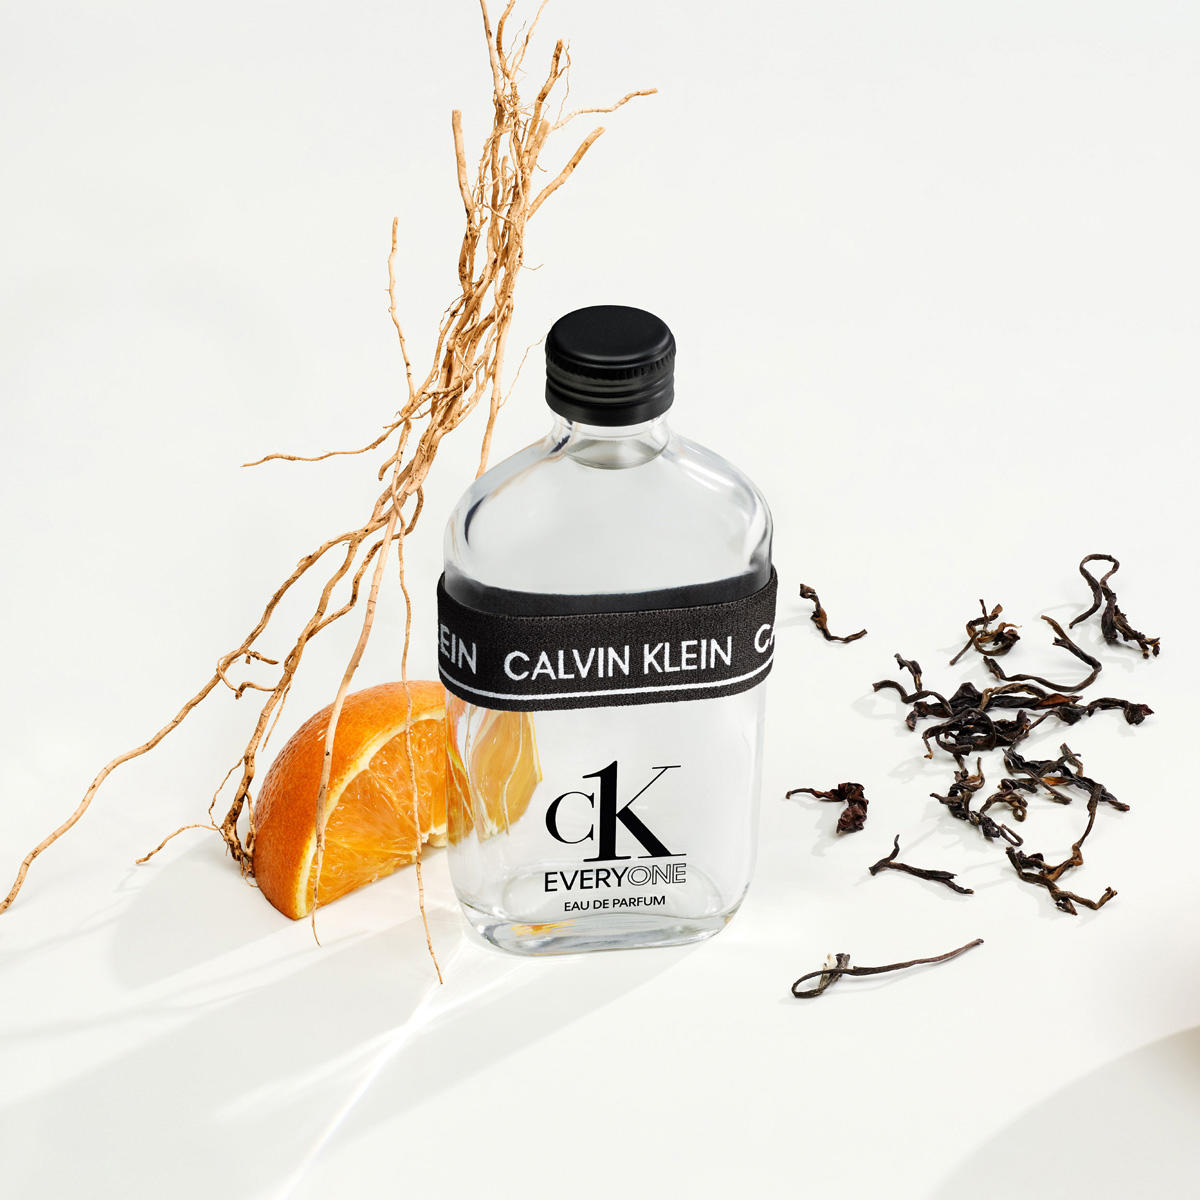 Calvin Klein ck EVERYONE Eau de Parfum 200 ml - 5